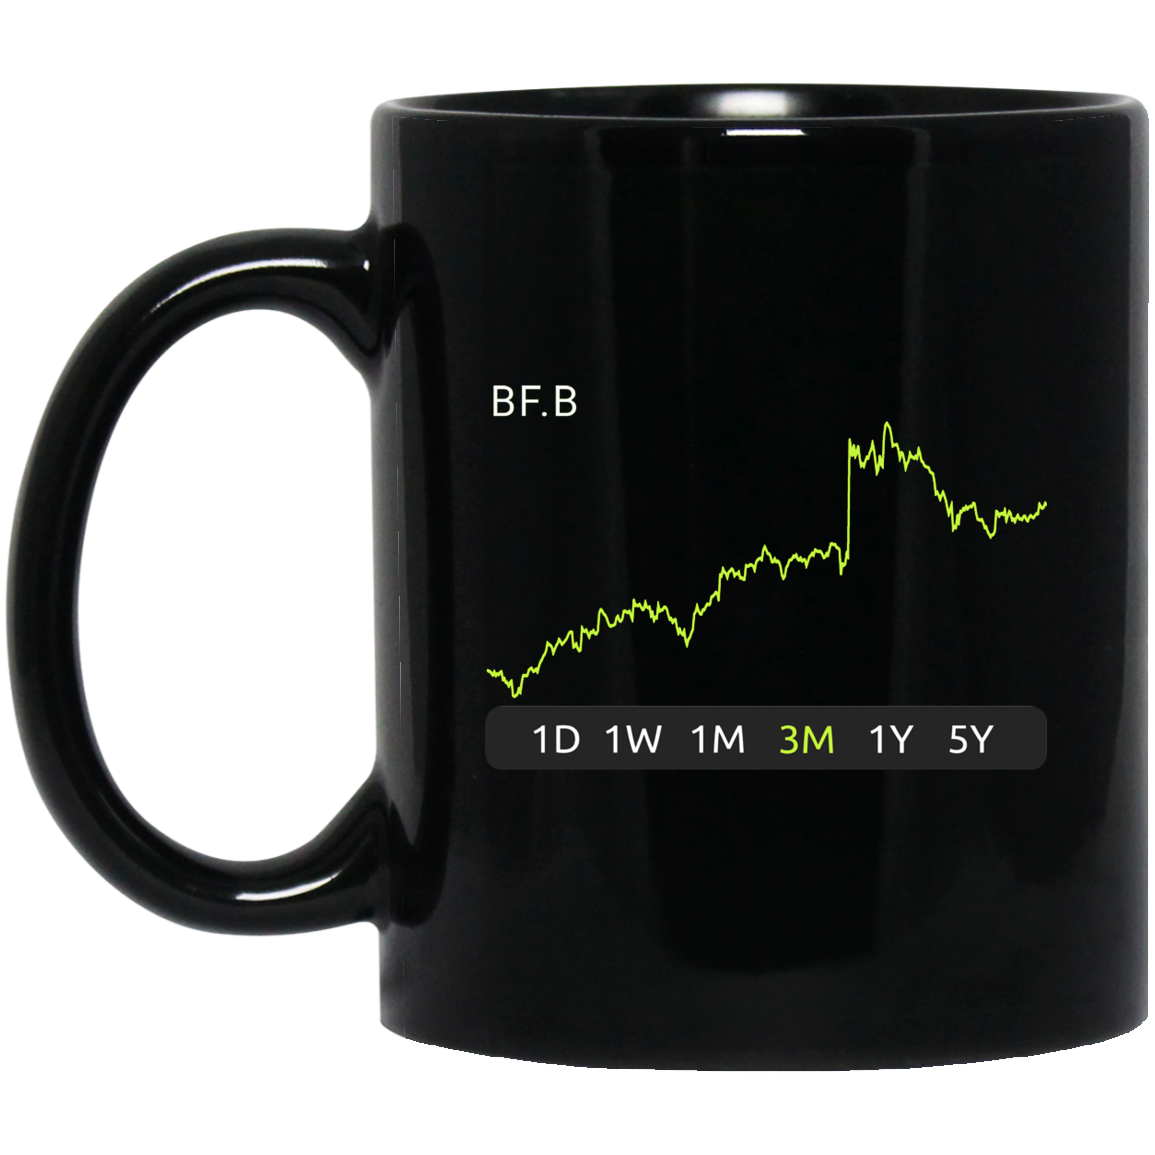 BF.B Stock 3m Mug